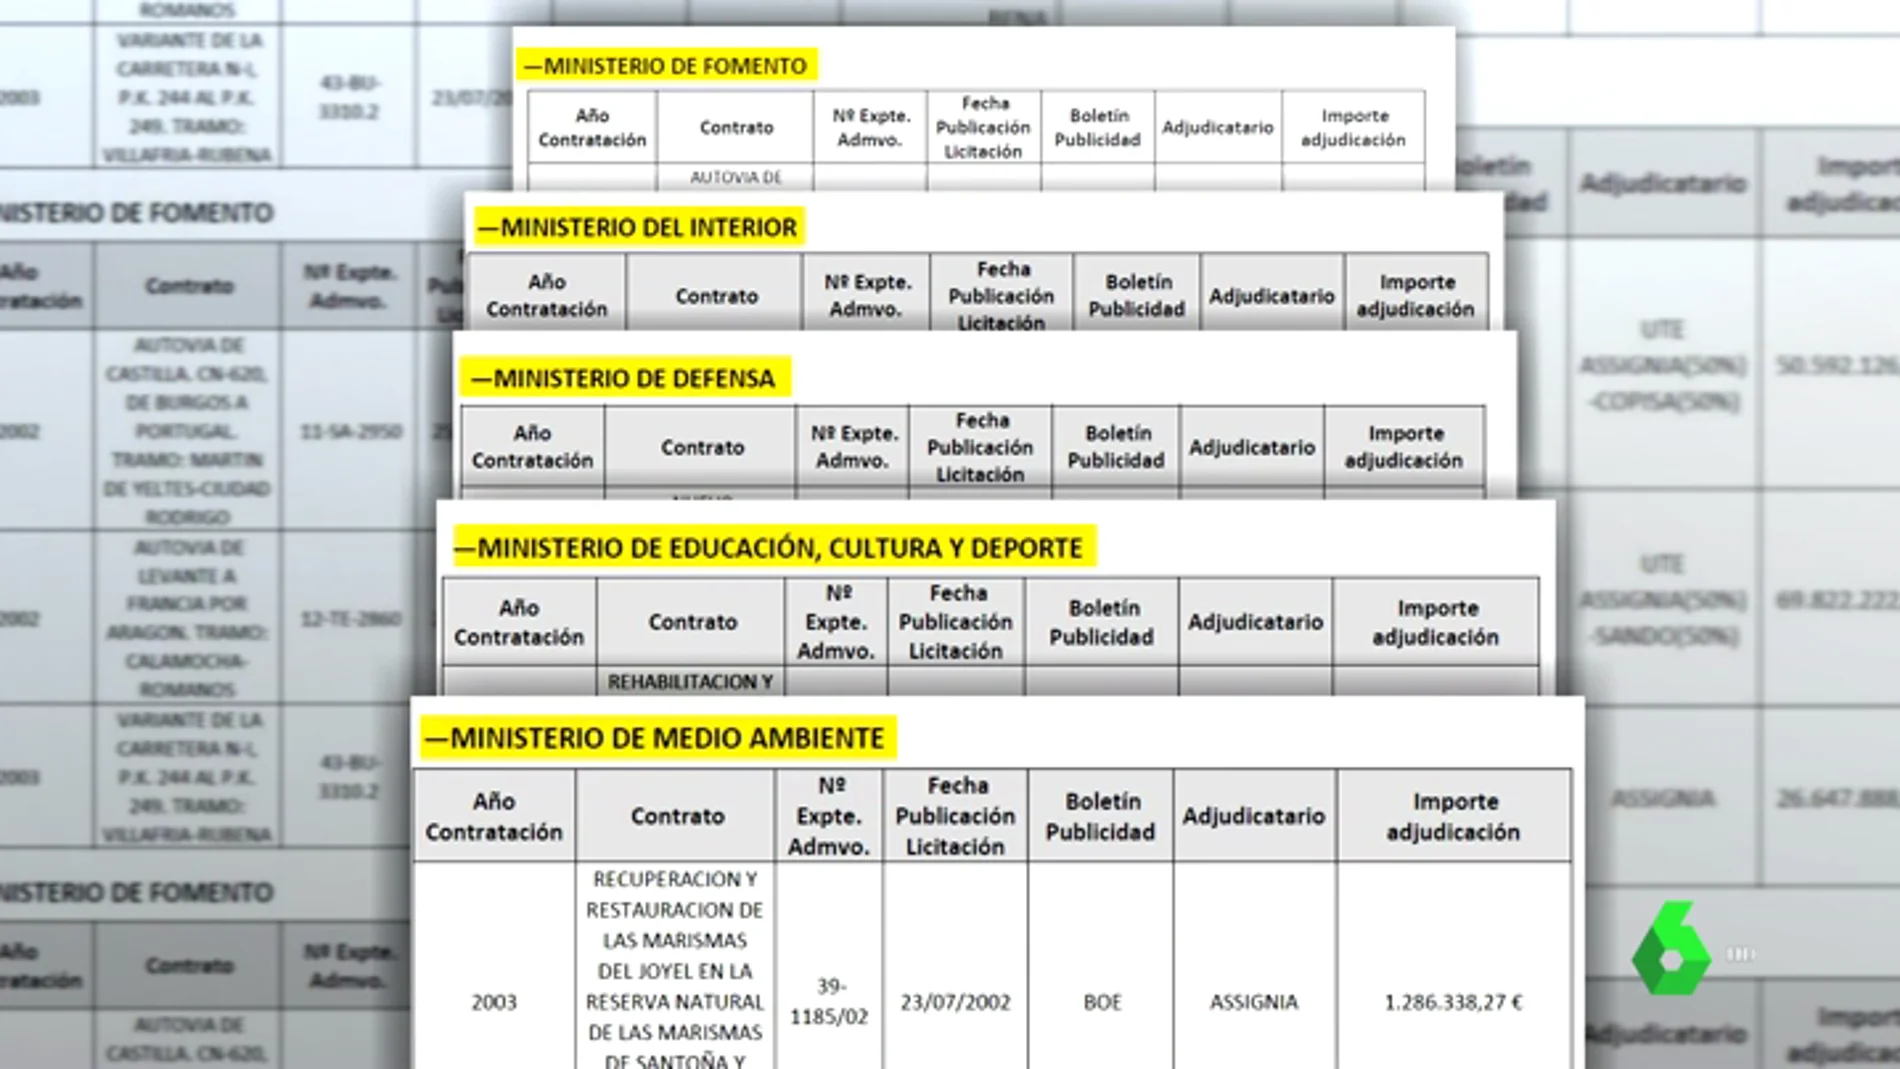 El juez que investiga la caja B del PP reclama documentación sobre 23 adjudicaciones durante el segundo mandato de Aznar